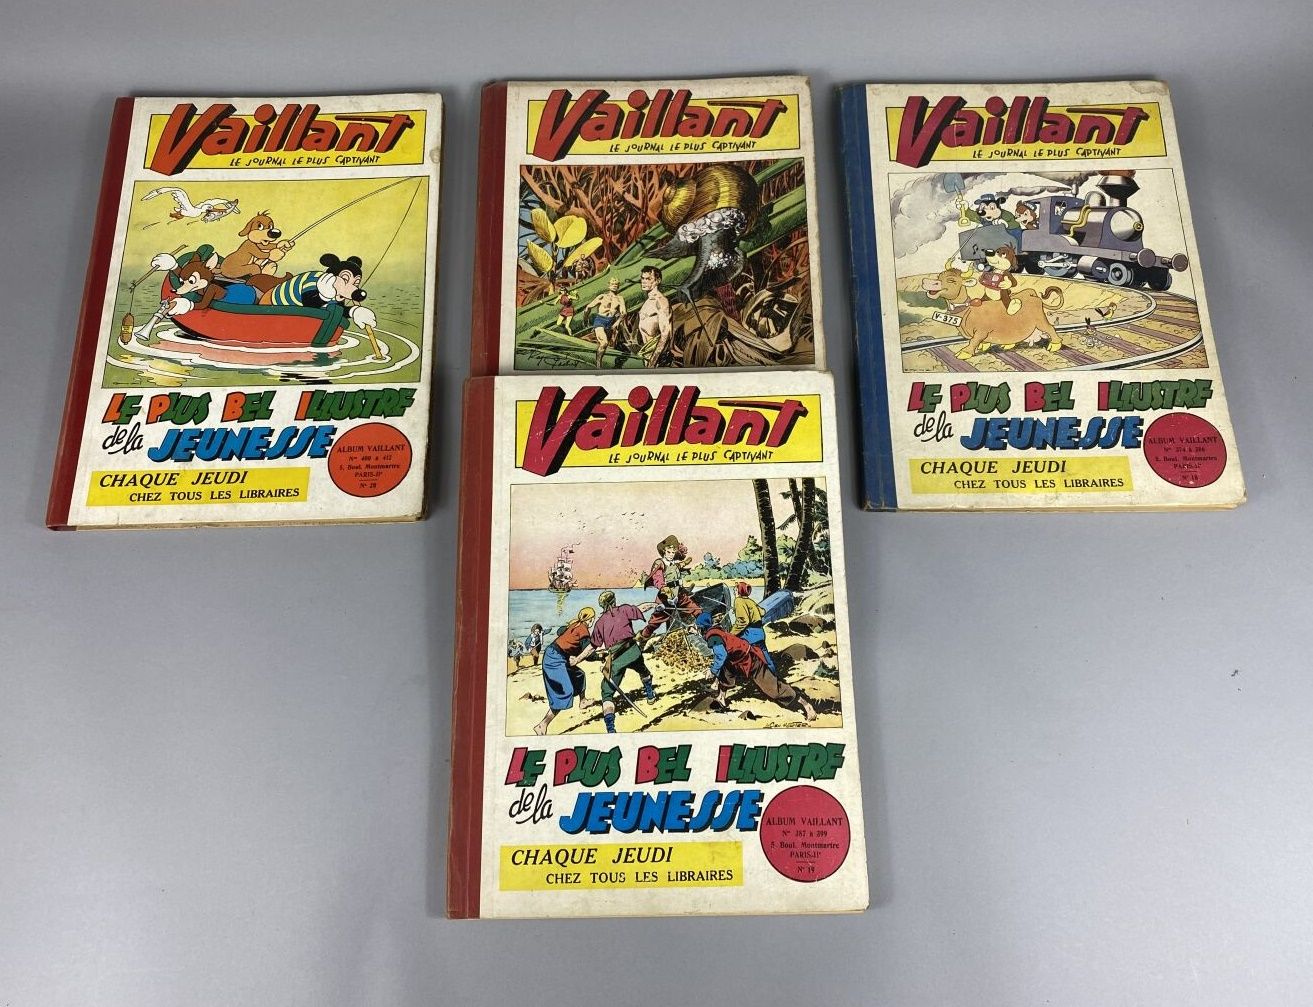 Null 漫画书。

瓦扬。

1952-53年的一套四本相册。

出版商的精装书，有彩色插图。

红色纸张边缘。

按原样。



另有一张专辑附在后面。